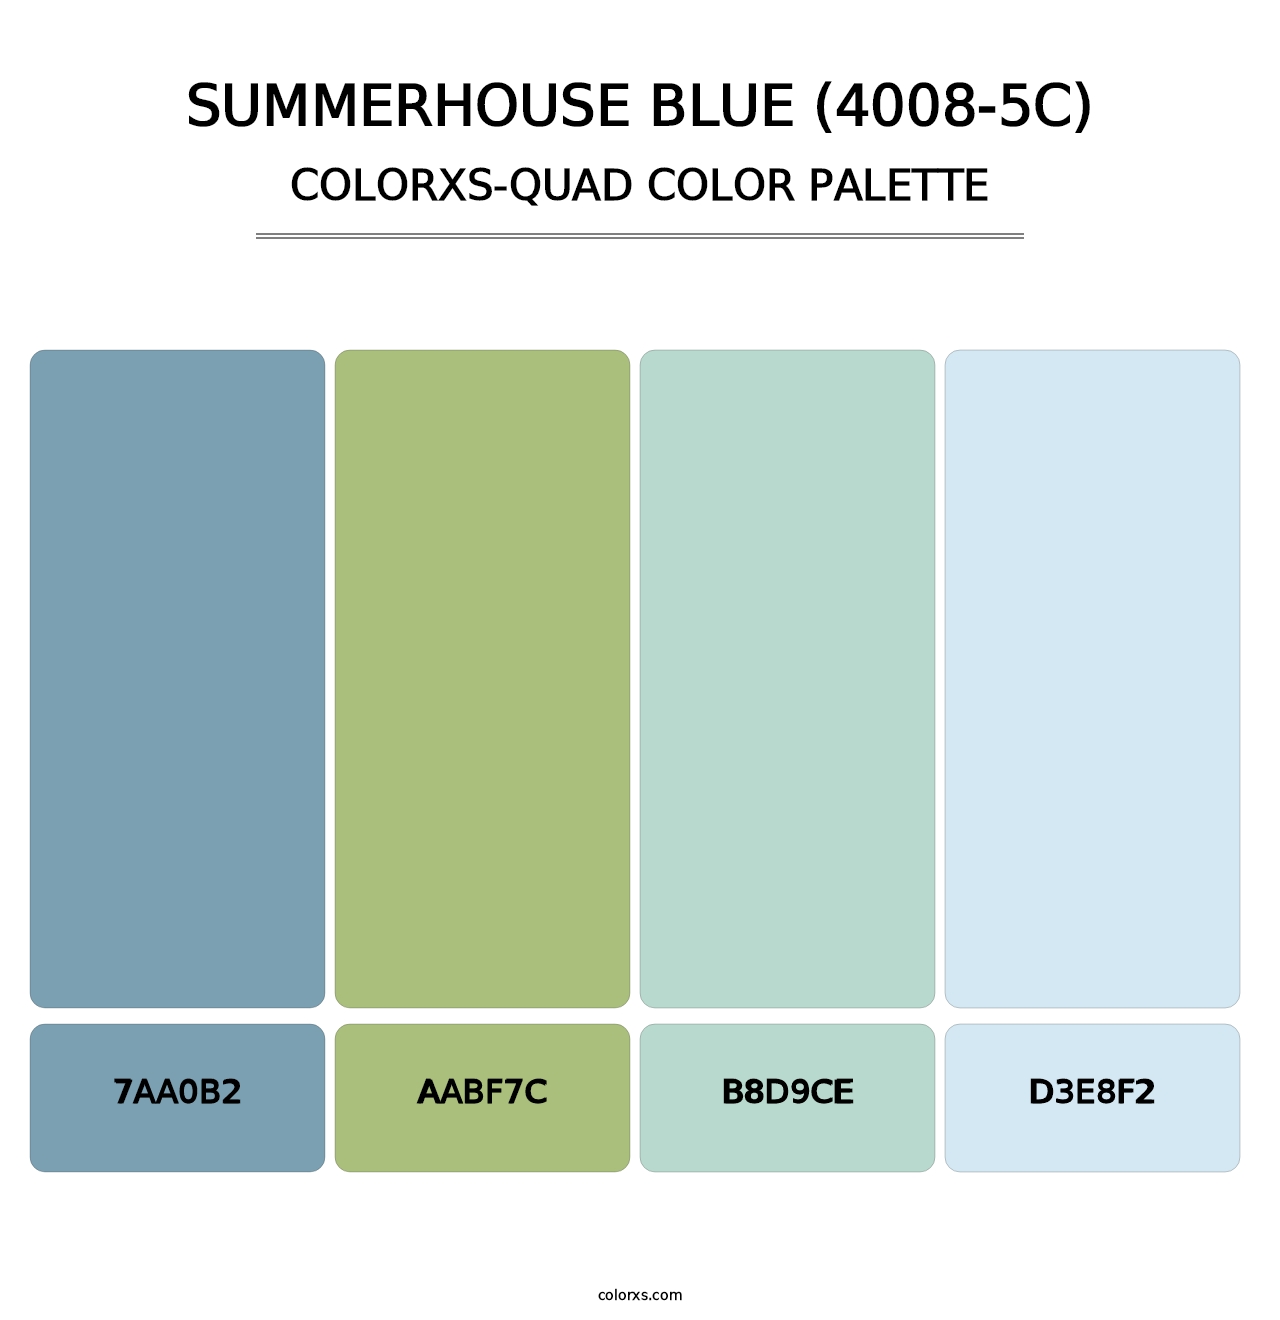 Summerhouse Blue (4008-5C) - Colorxs Quad Palette